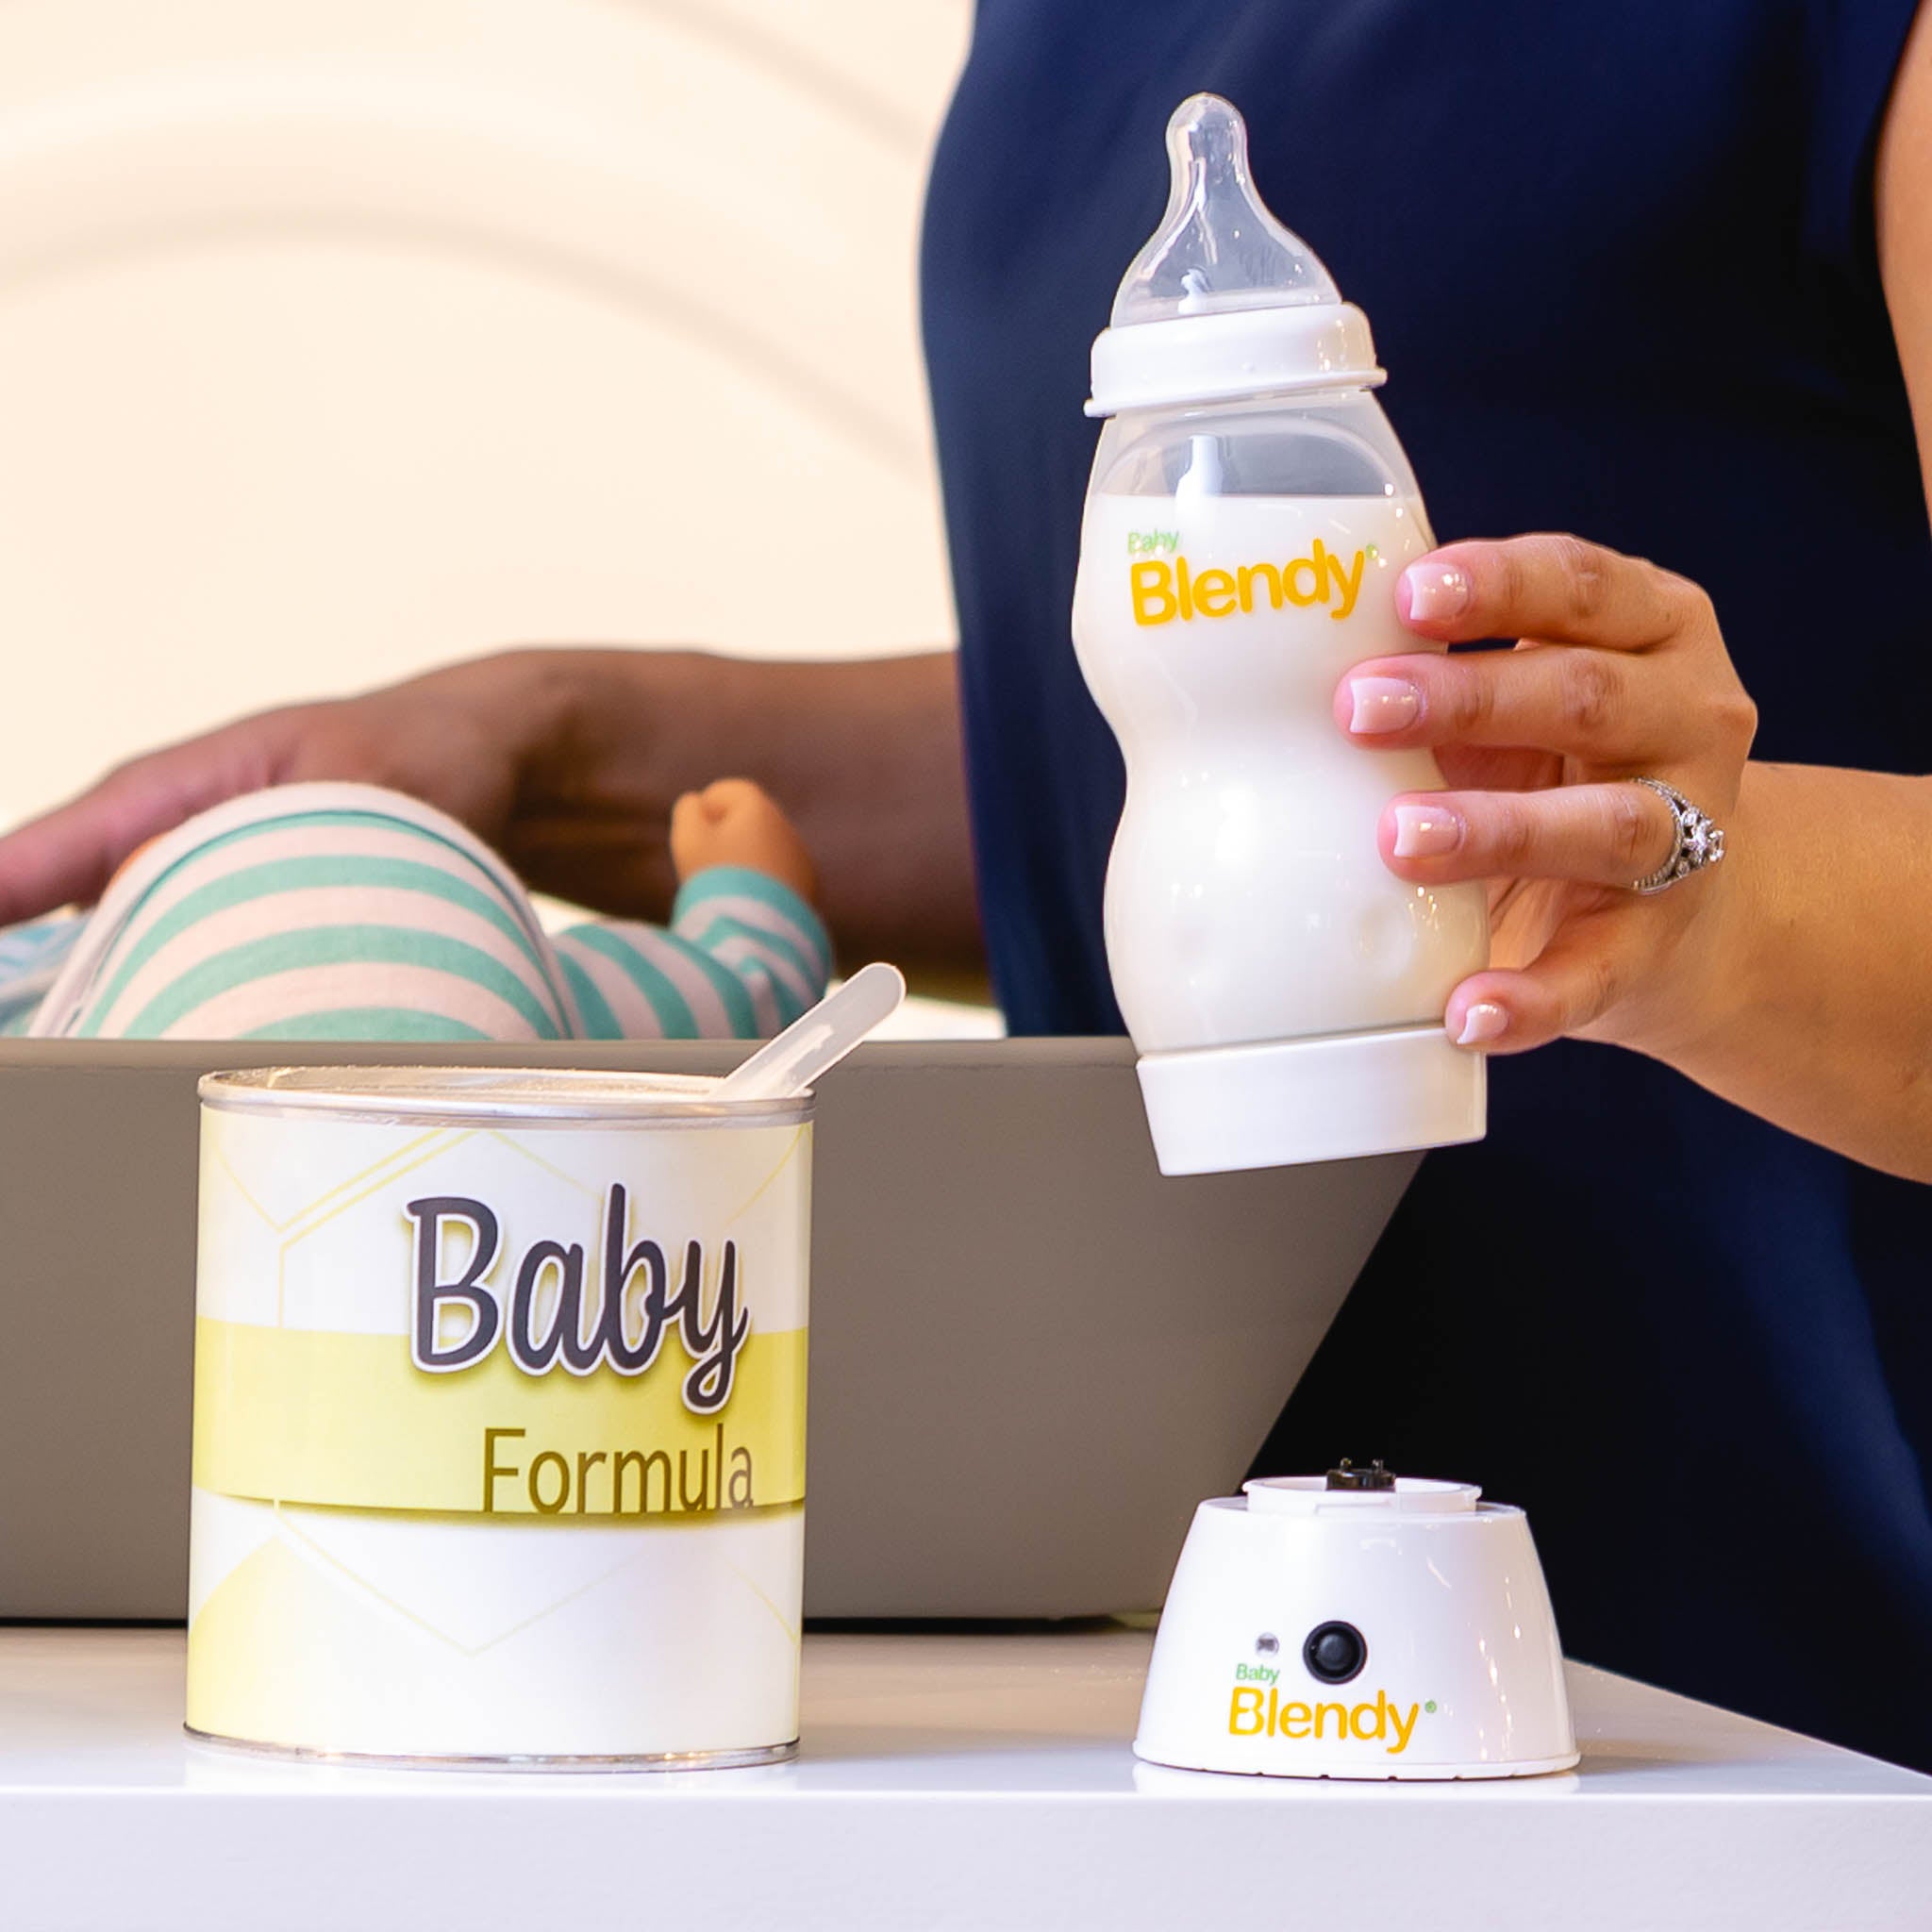 Portable Baby Bottle Blender Price